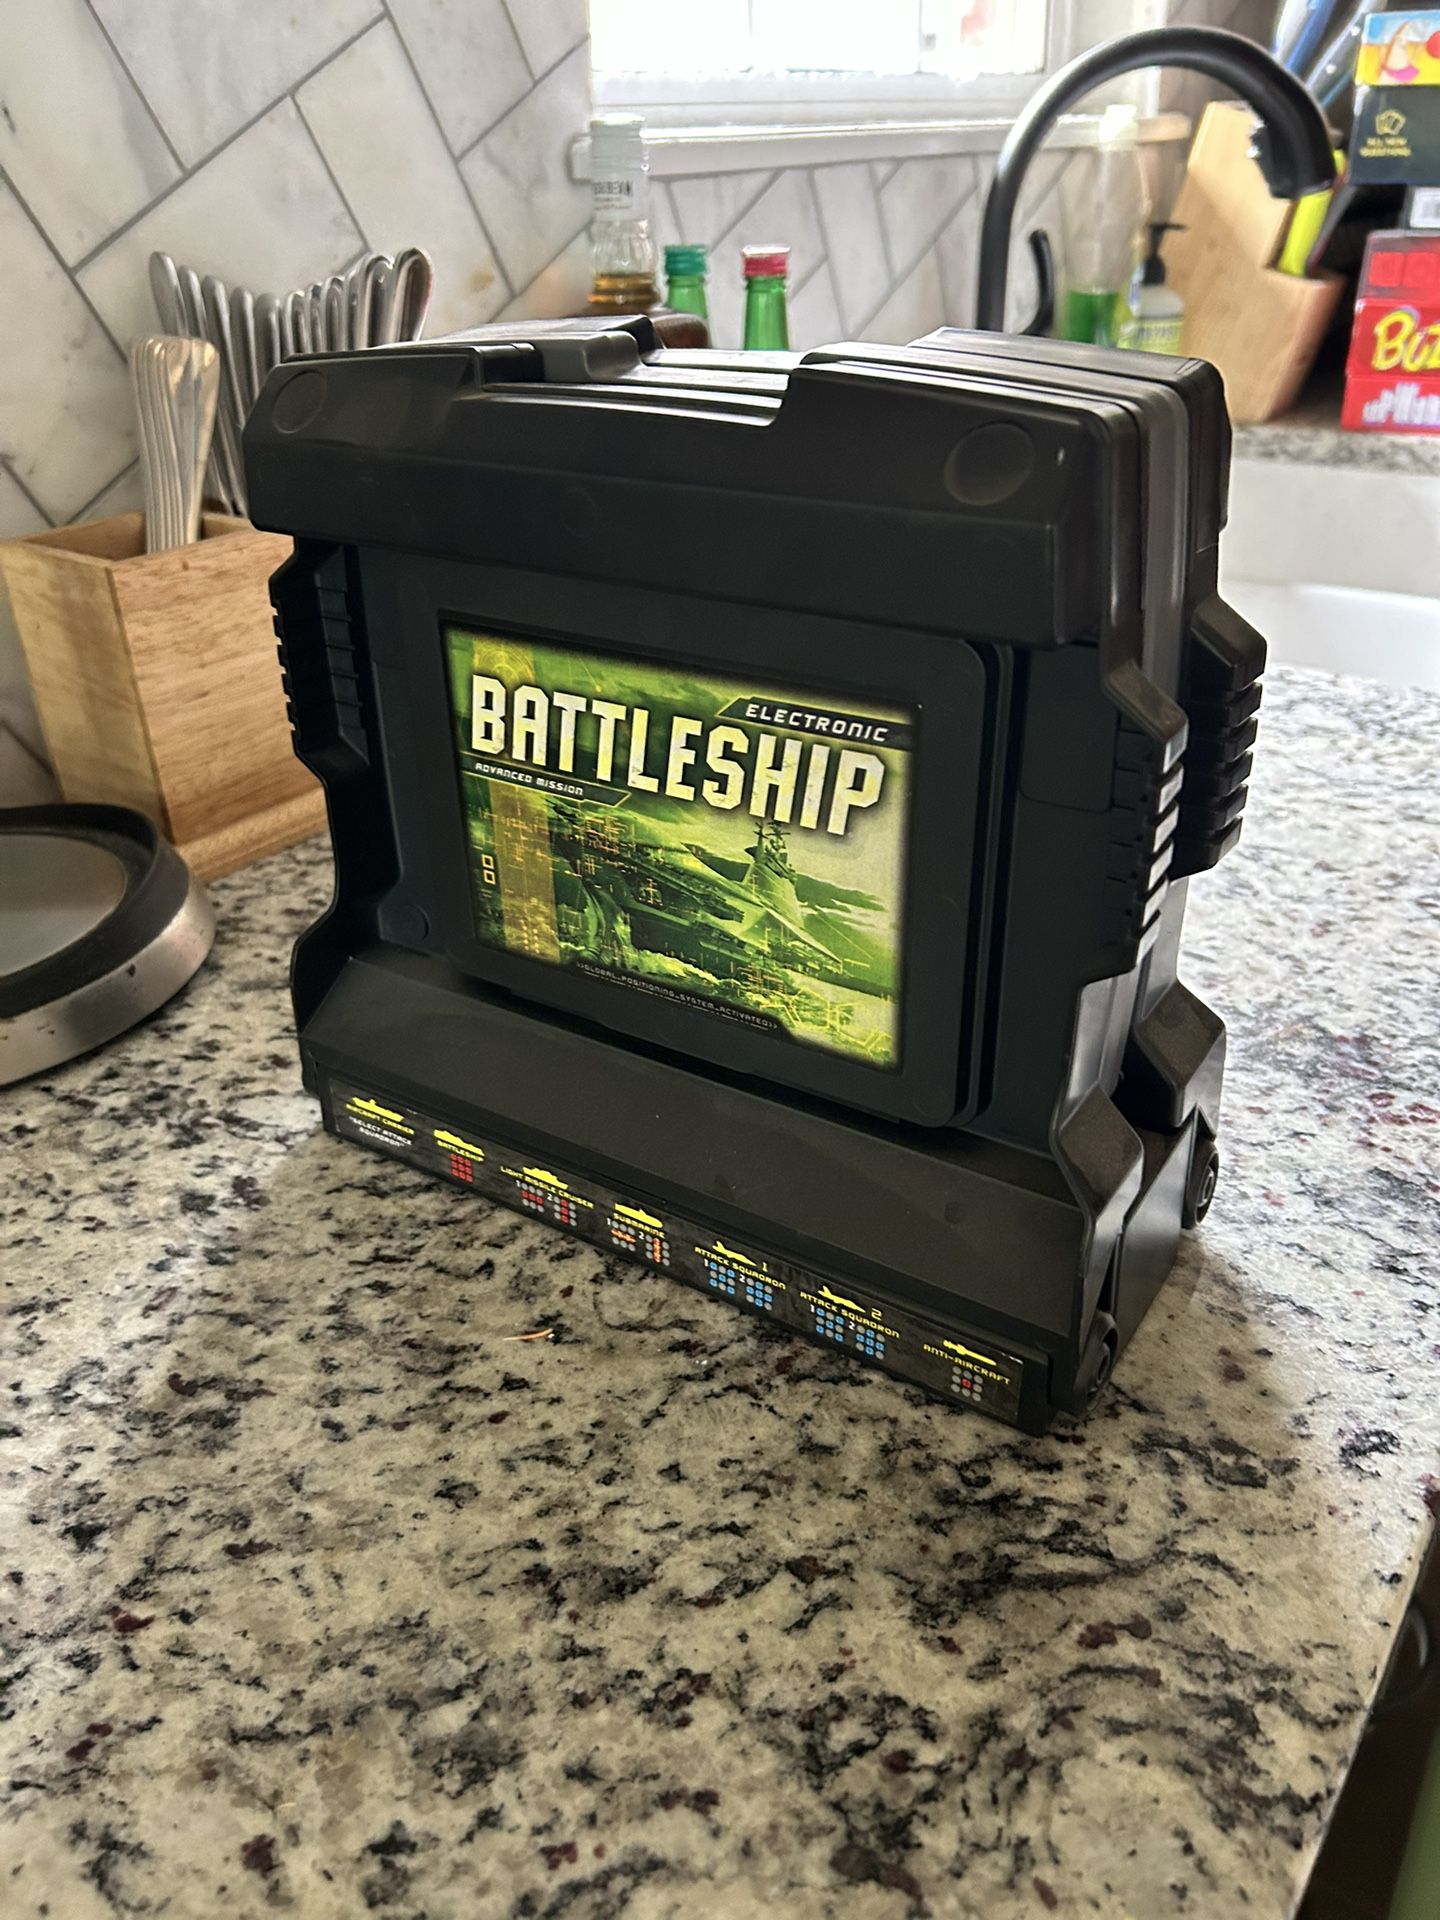 Battleship Game